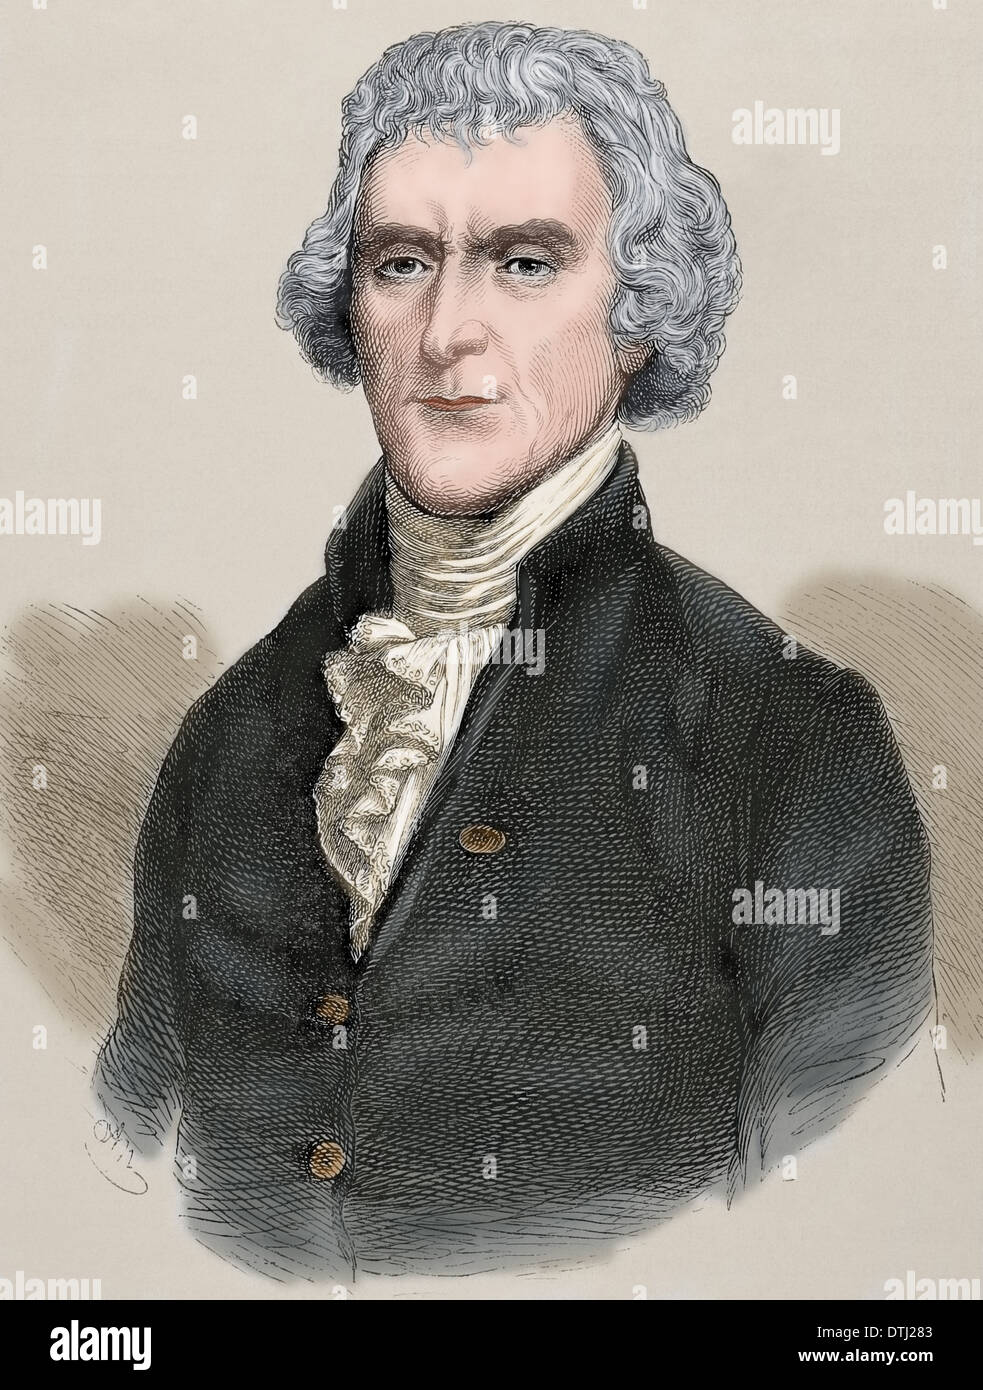 Thomas Jefferson (1743-1826). 3. Präsident und einer der Gründerväter der Vereinigten Staaten. Gravur. Farbige. Stockfoto